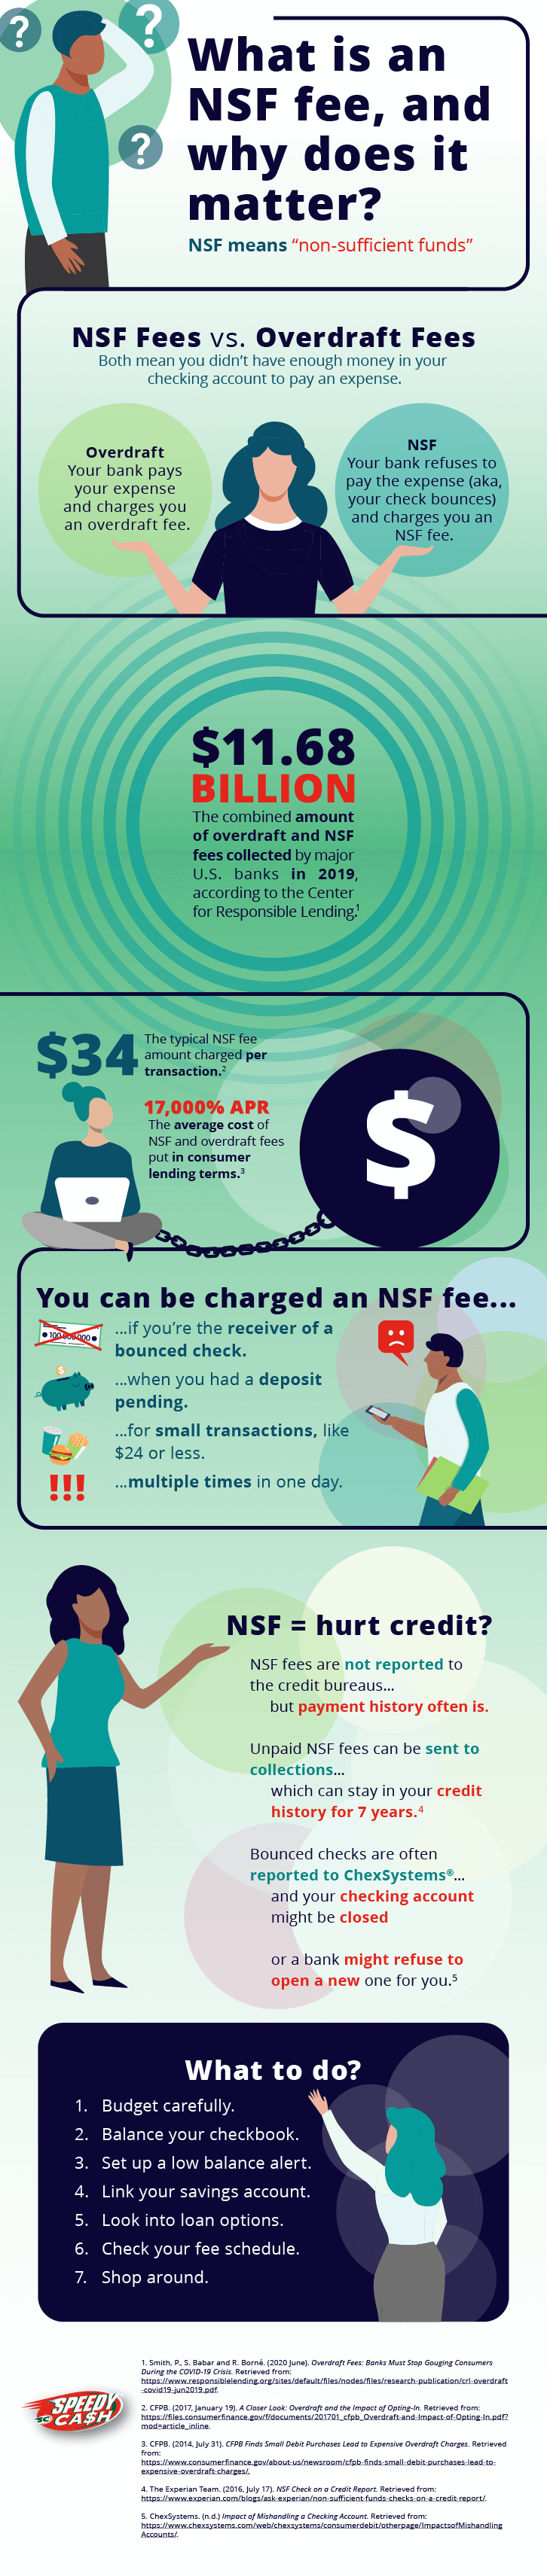 NSF fee explained